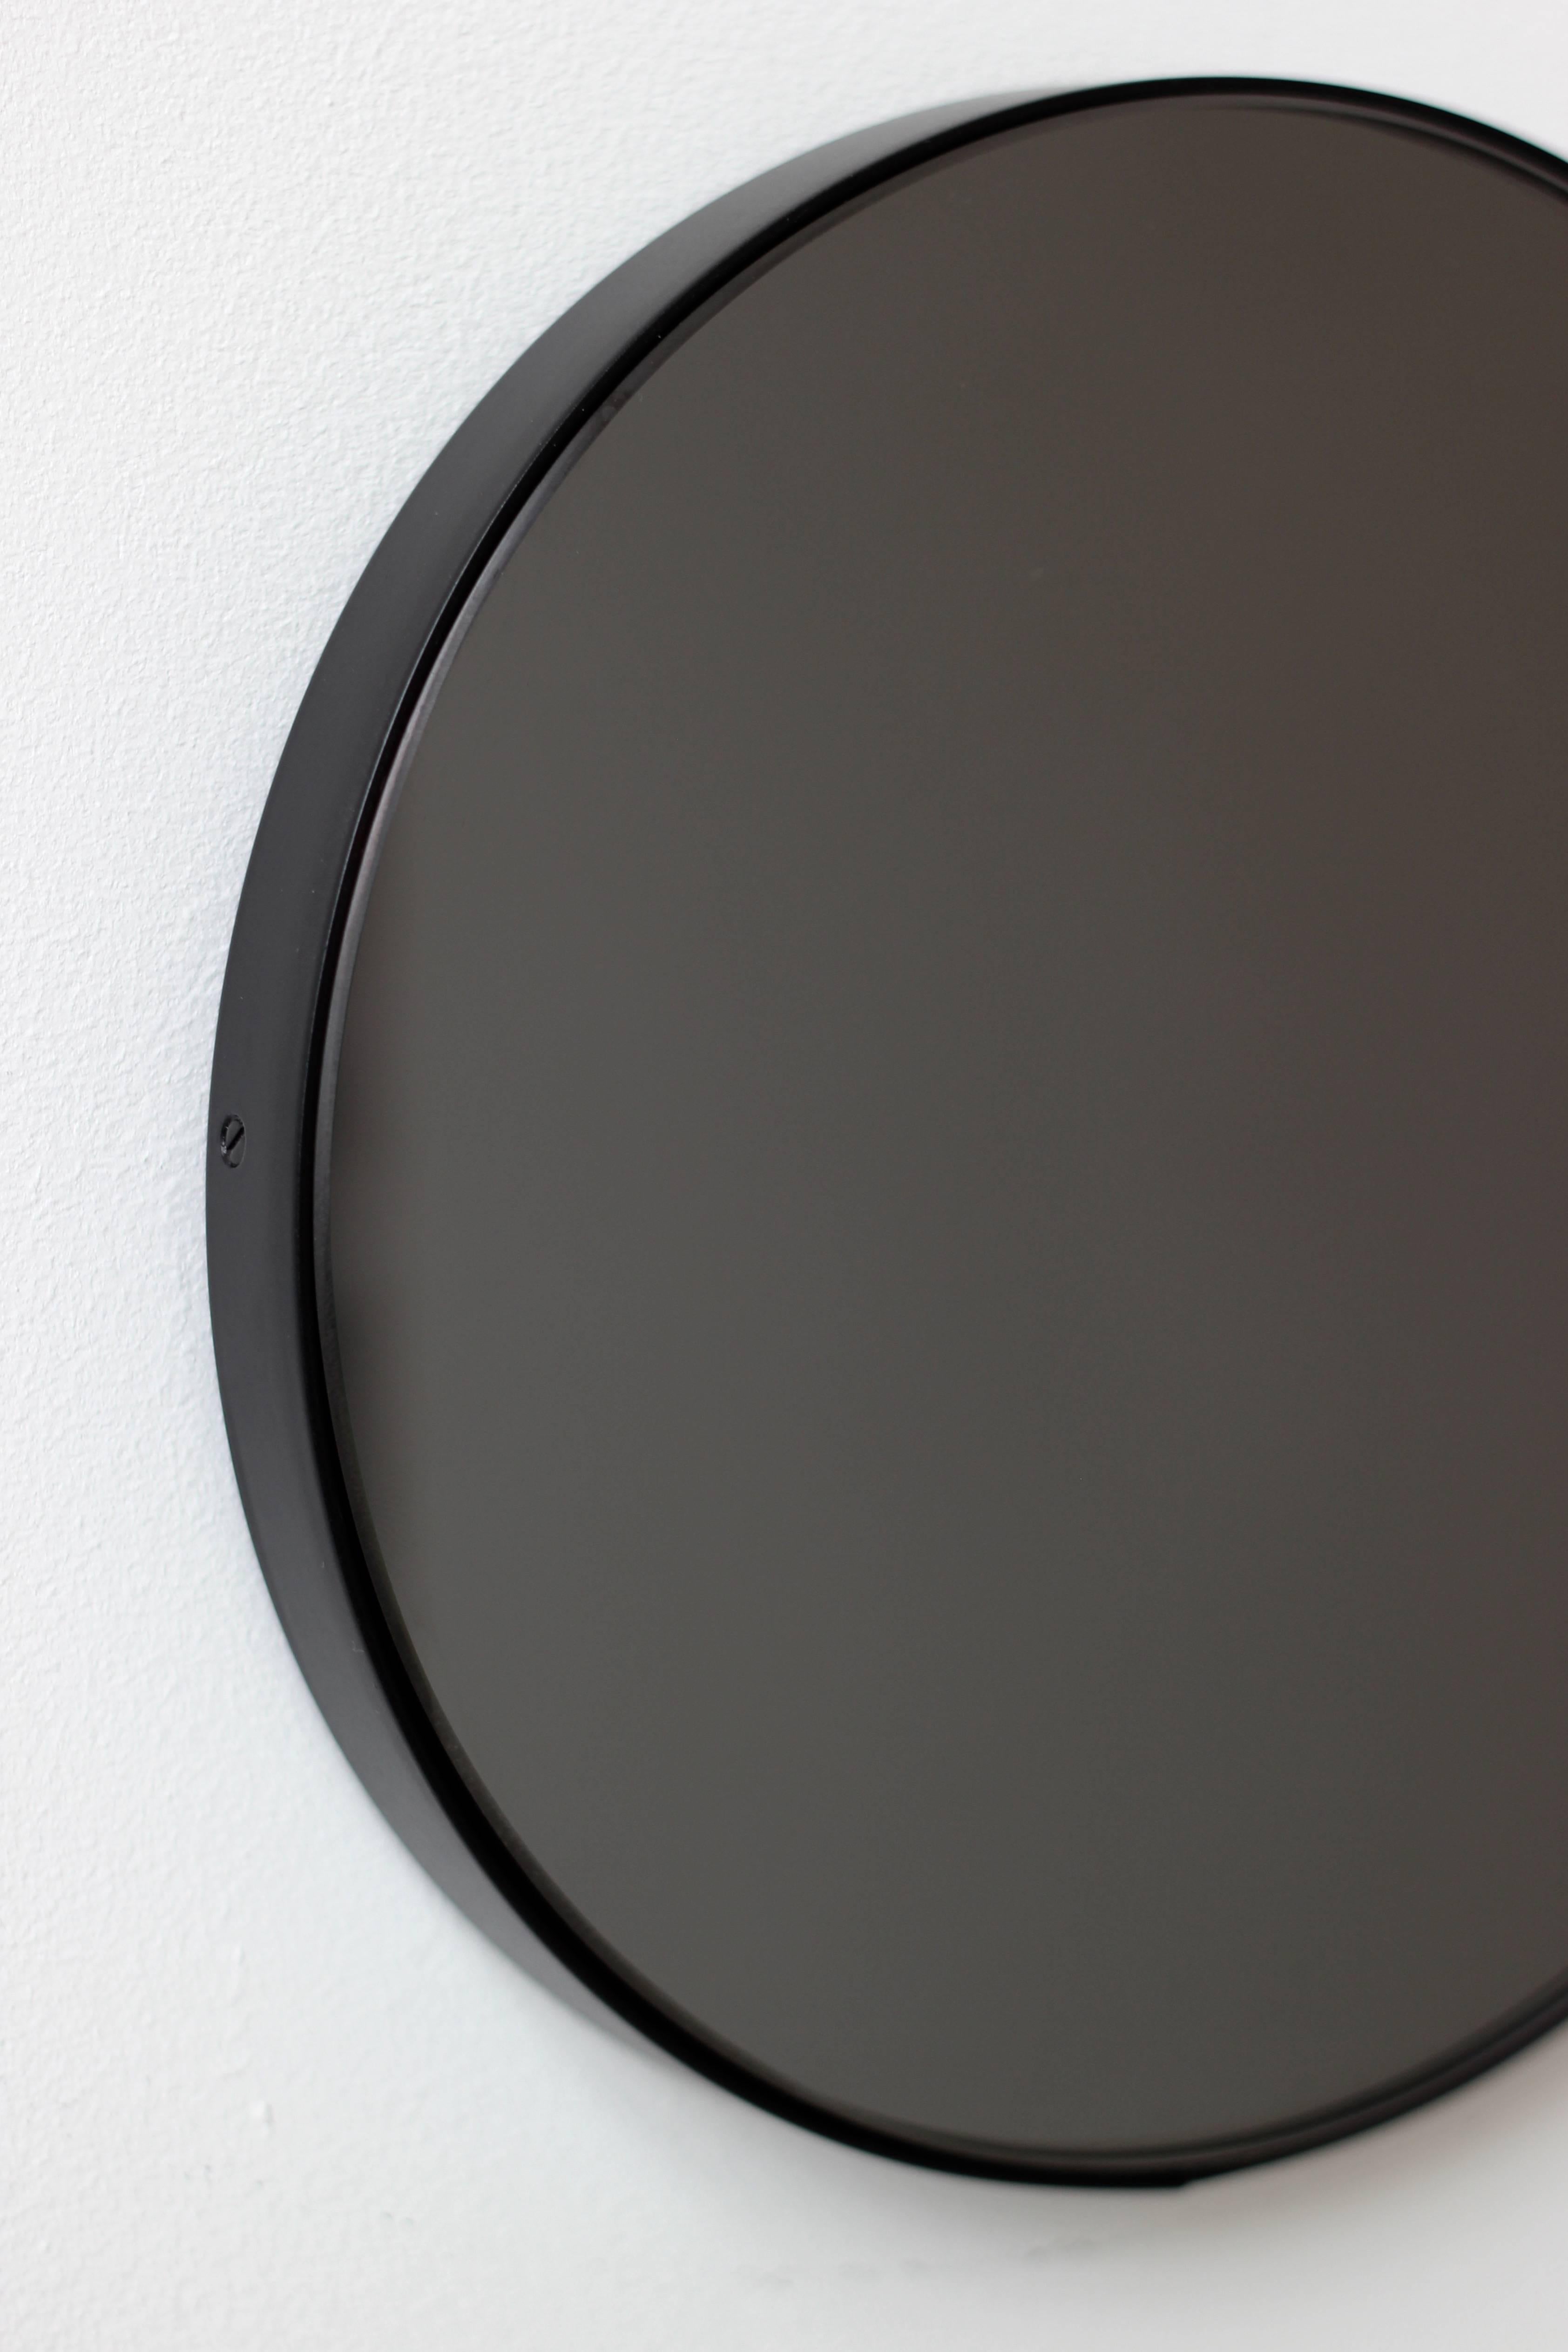 British Orbis Black Tinted Modern Art Deco Round Mirror with Black Frame, XL For Sale